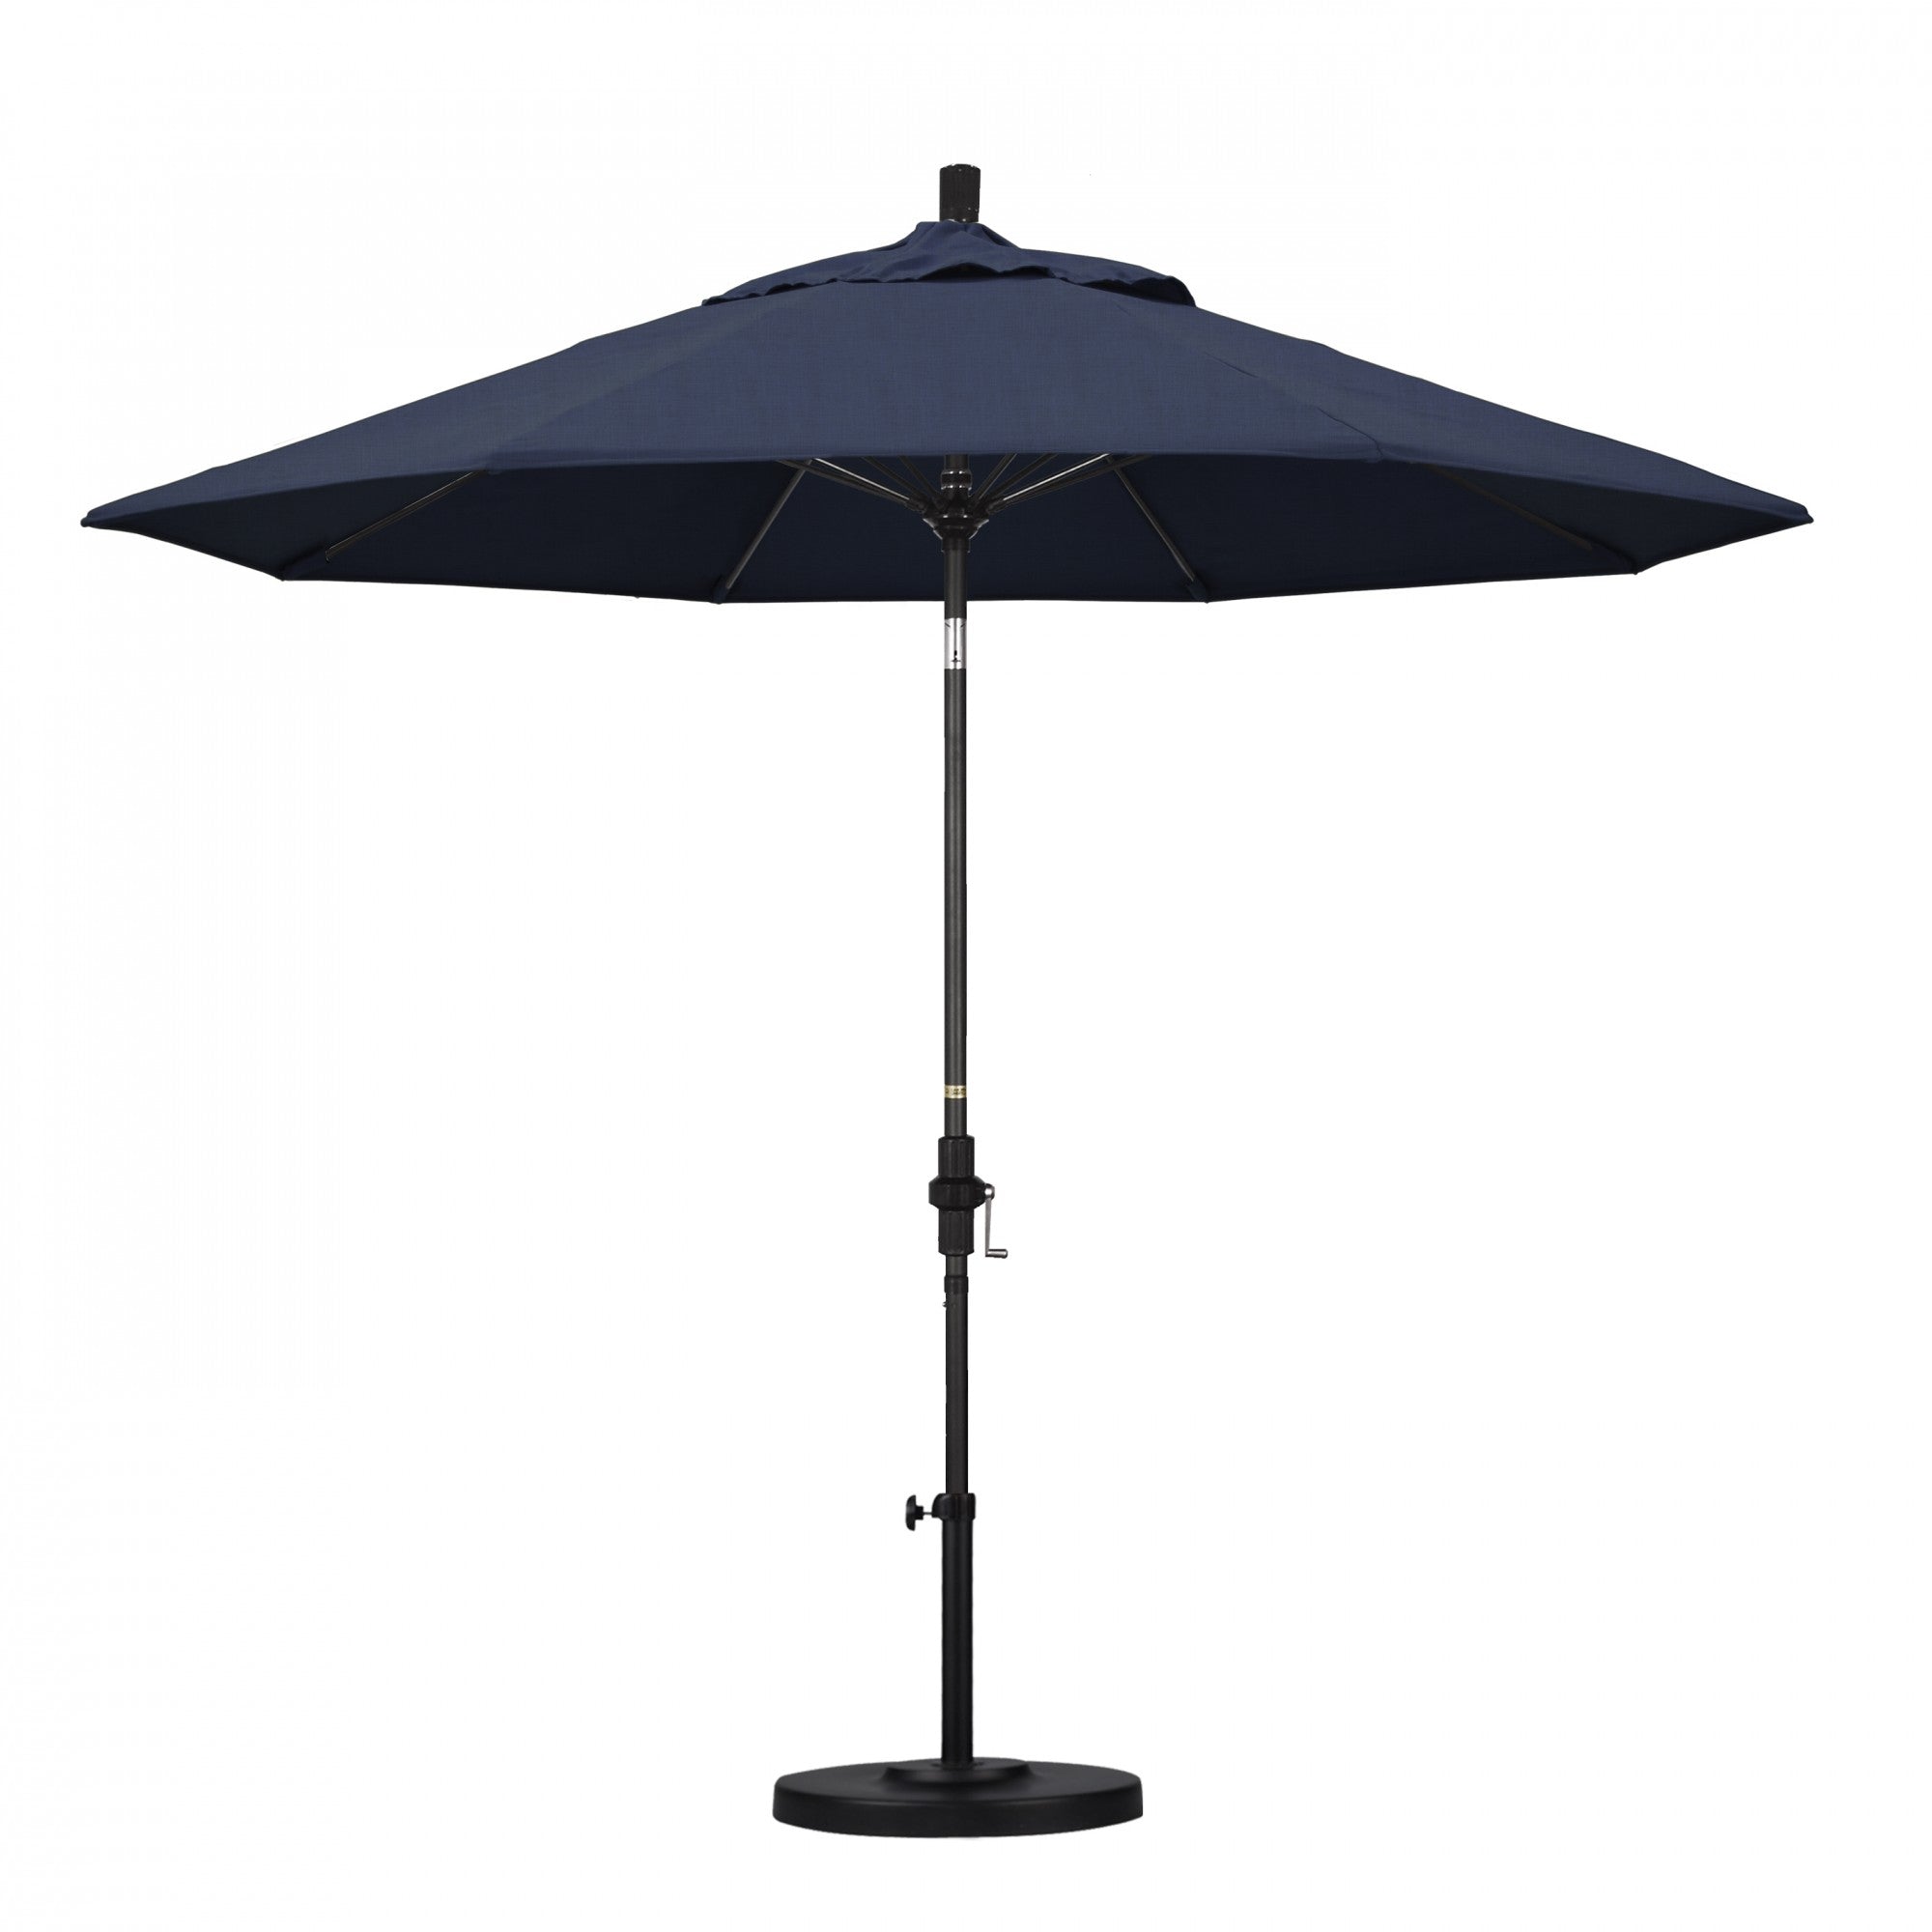 California Umbrella - 9' - Patio Umbrella Umbrella - Aluminum Pole - Spectrum Indigo - Sunbrella  - GSCUF908705-48080